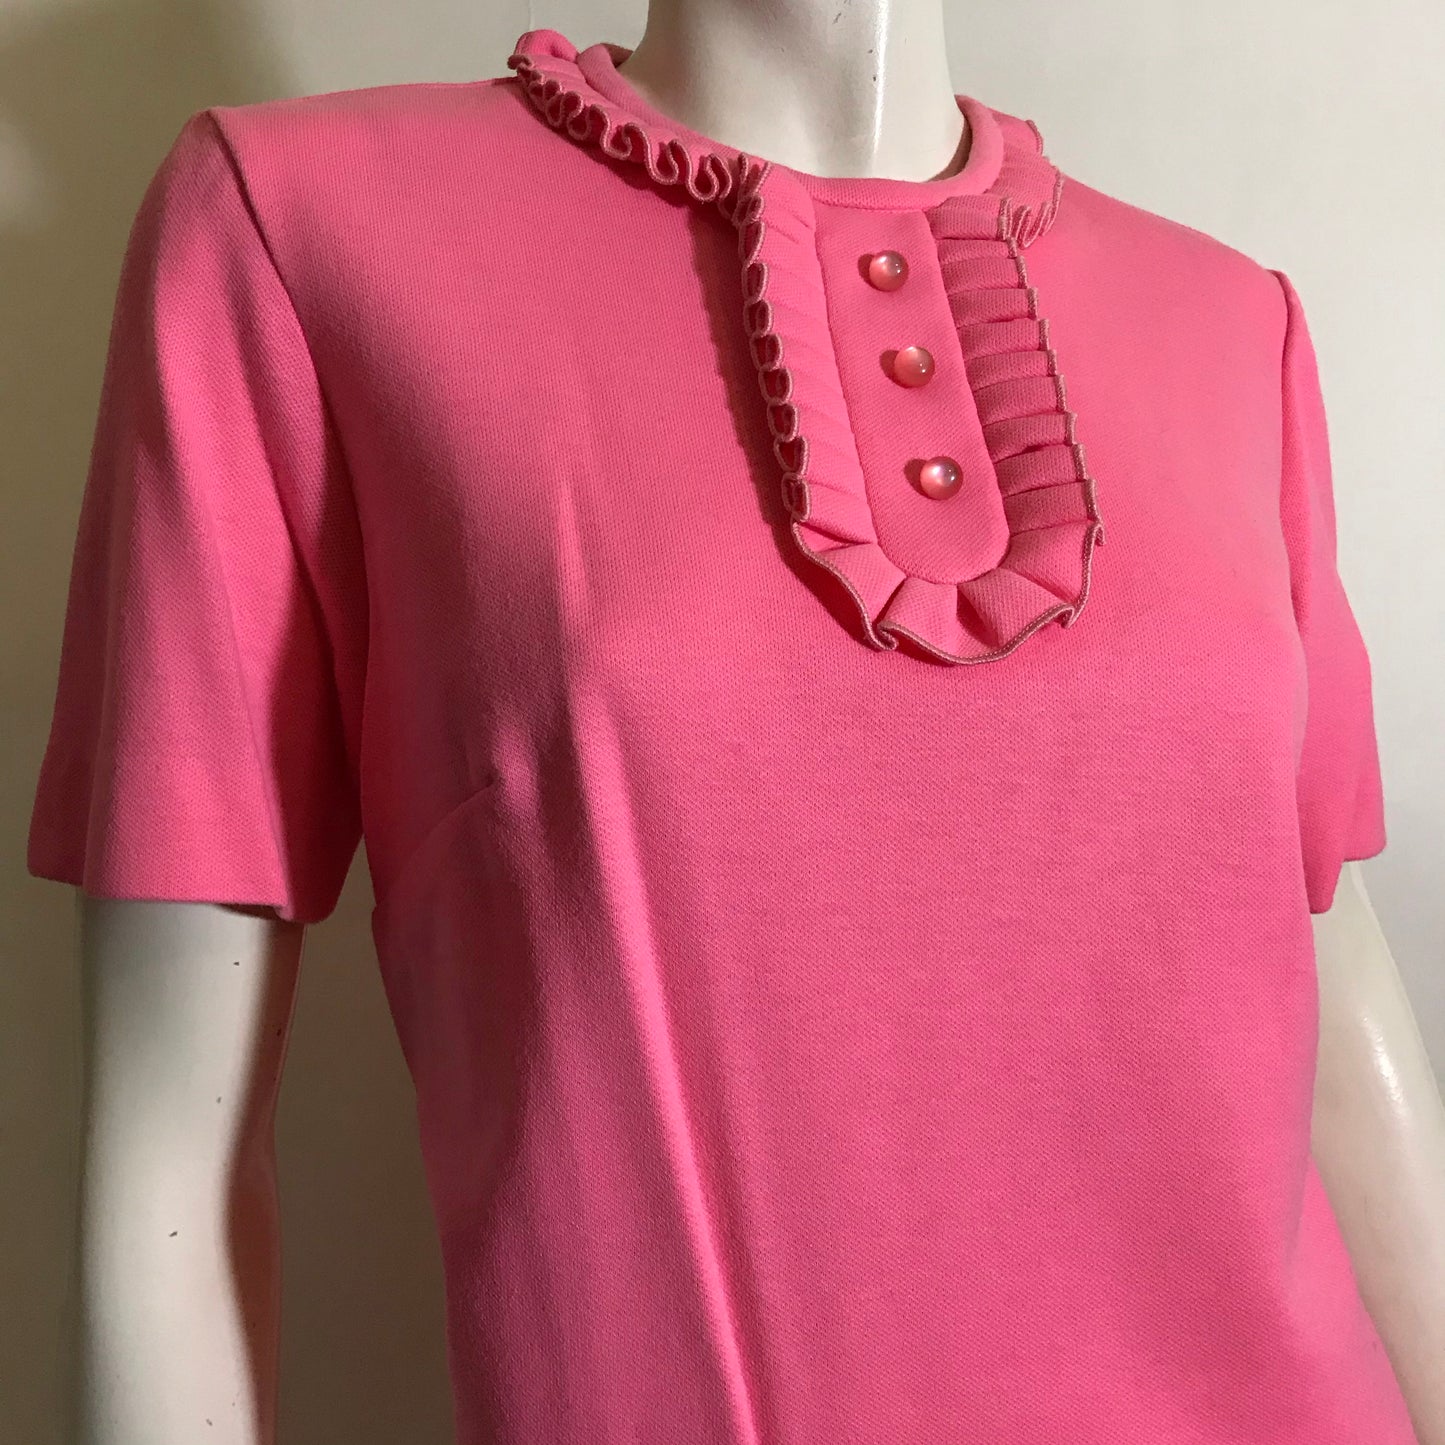 Cotton Candy Pink Poly Knit 2 Pc Dress Set circa 1960s